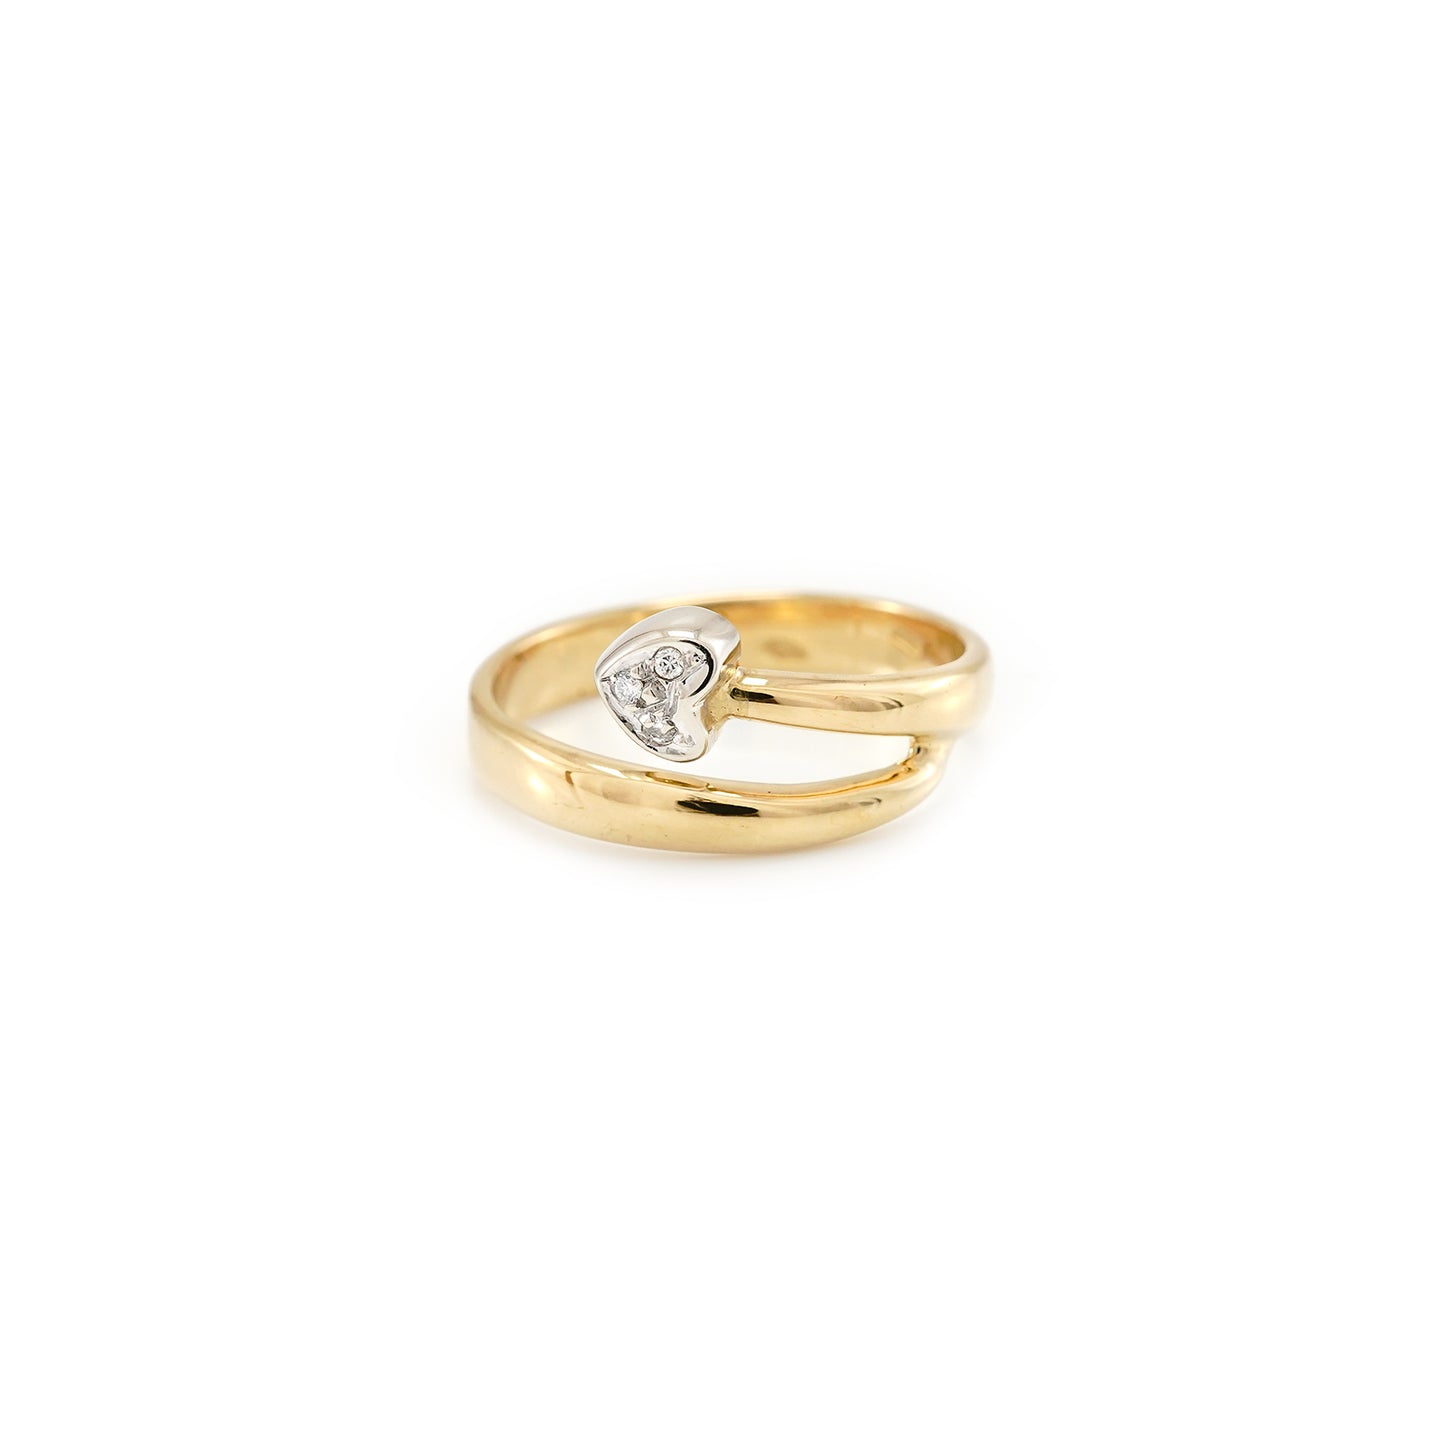 Women's ring heart diamond ring 18K gold ring with diamonds women's jewelry gold ring